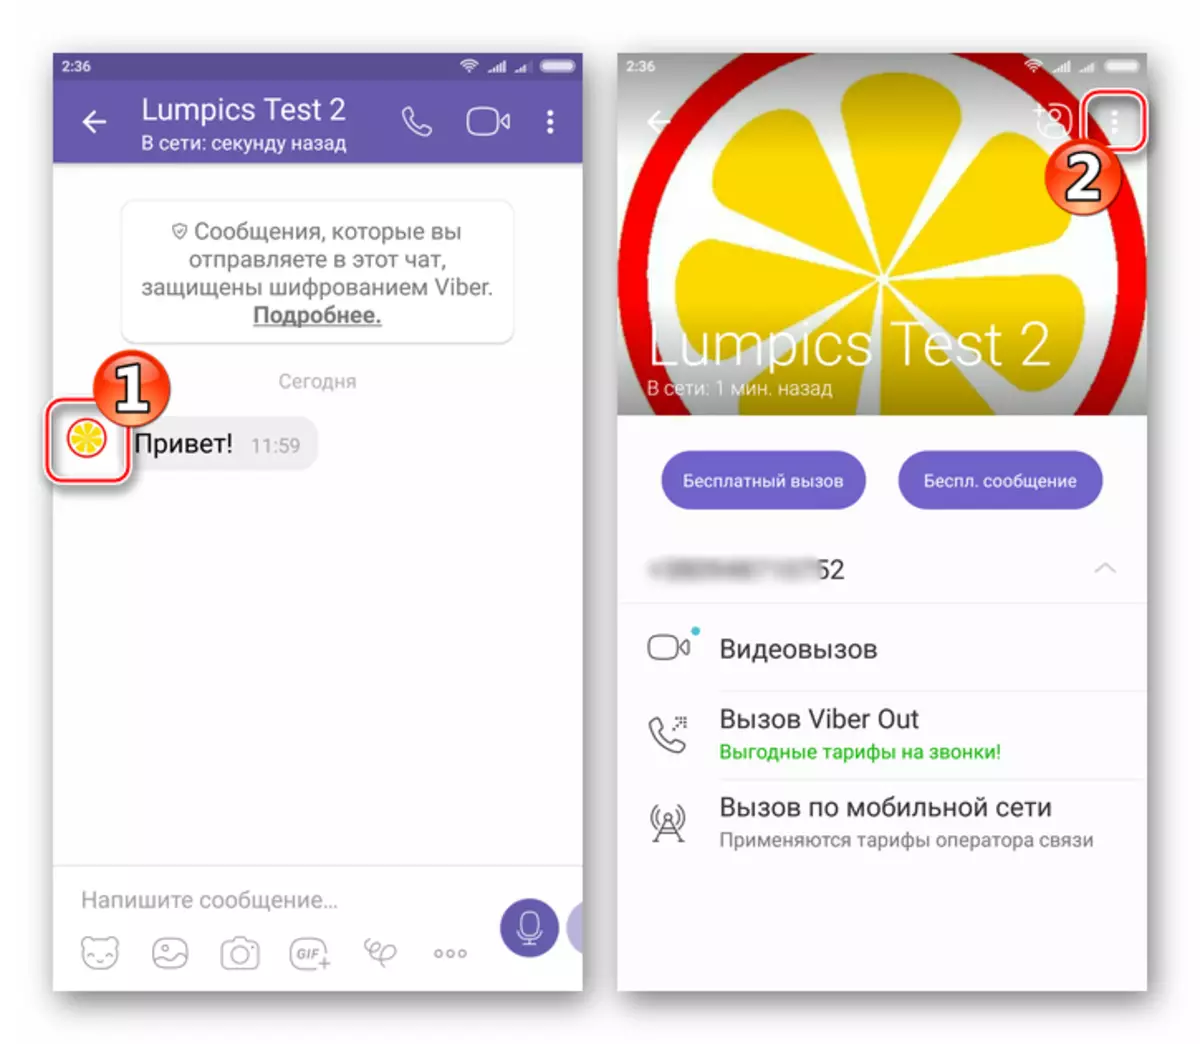 Viber для Android пераход да блакавання субяседніка з экрана чата з ім